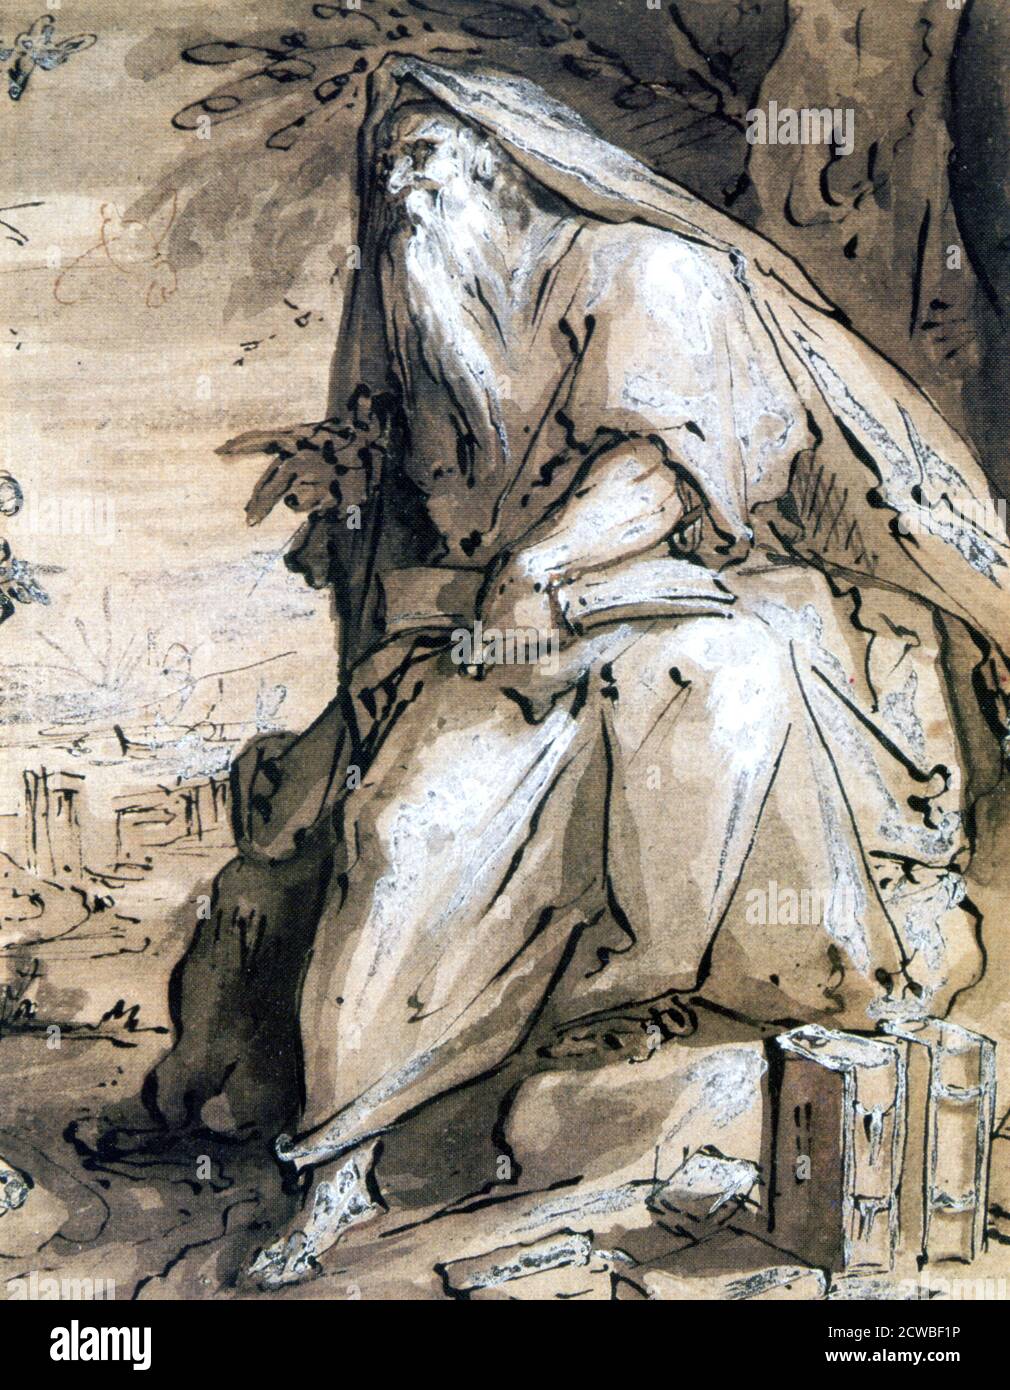 Prophet', c1600. Künstler: Hendrik Goltzius. Hendrik Goltzius (1558-1617) war ein in Deutschland geborener niederländischer Grafiker, Zeichner und Maler. Er war der führende niederländische Kupferstecher des frühen Barock. Stockfoto